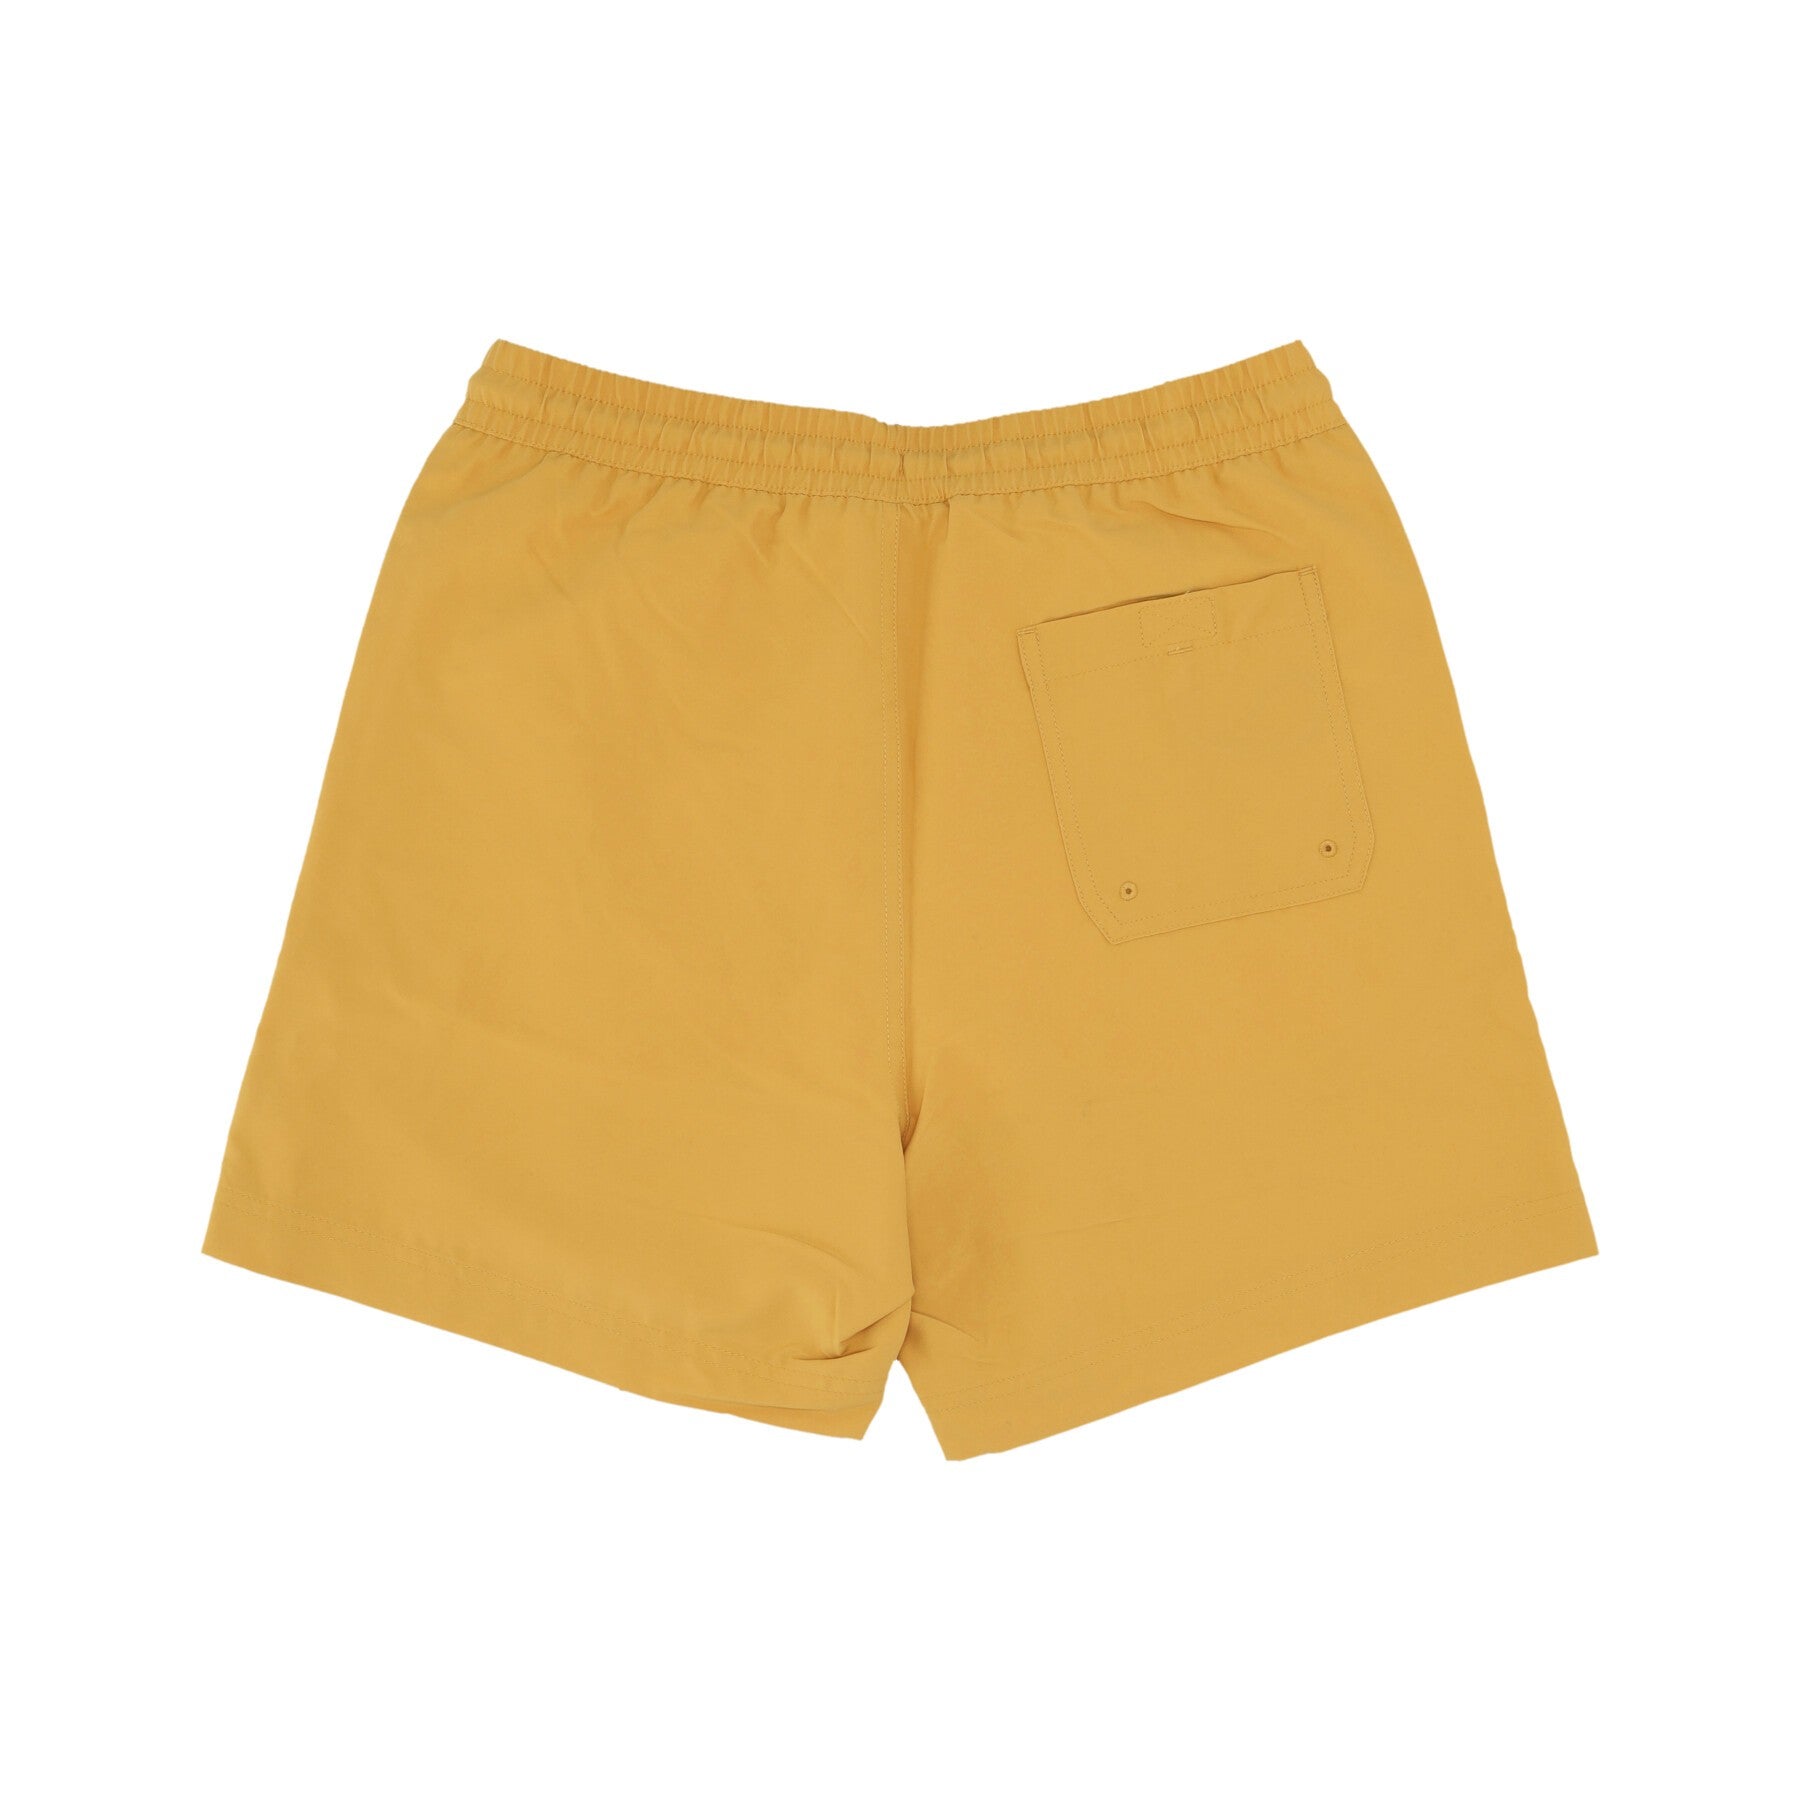 Costume Pantaloncino Uomo Chase Swim Trunks Sunray/gold I026235